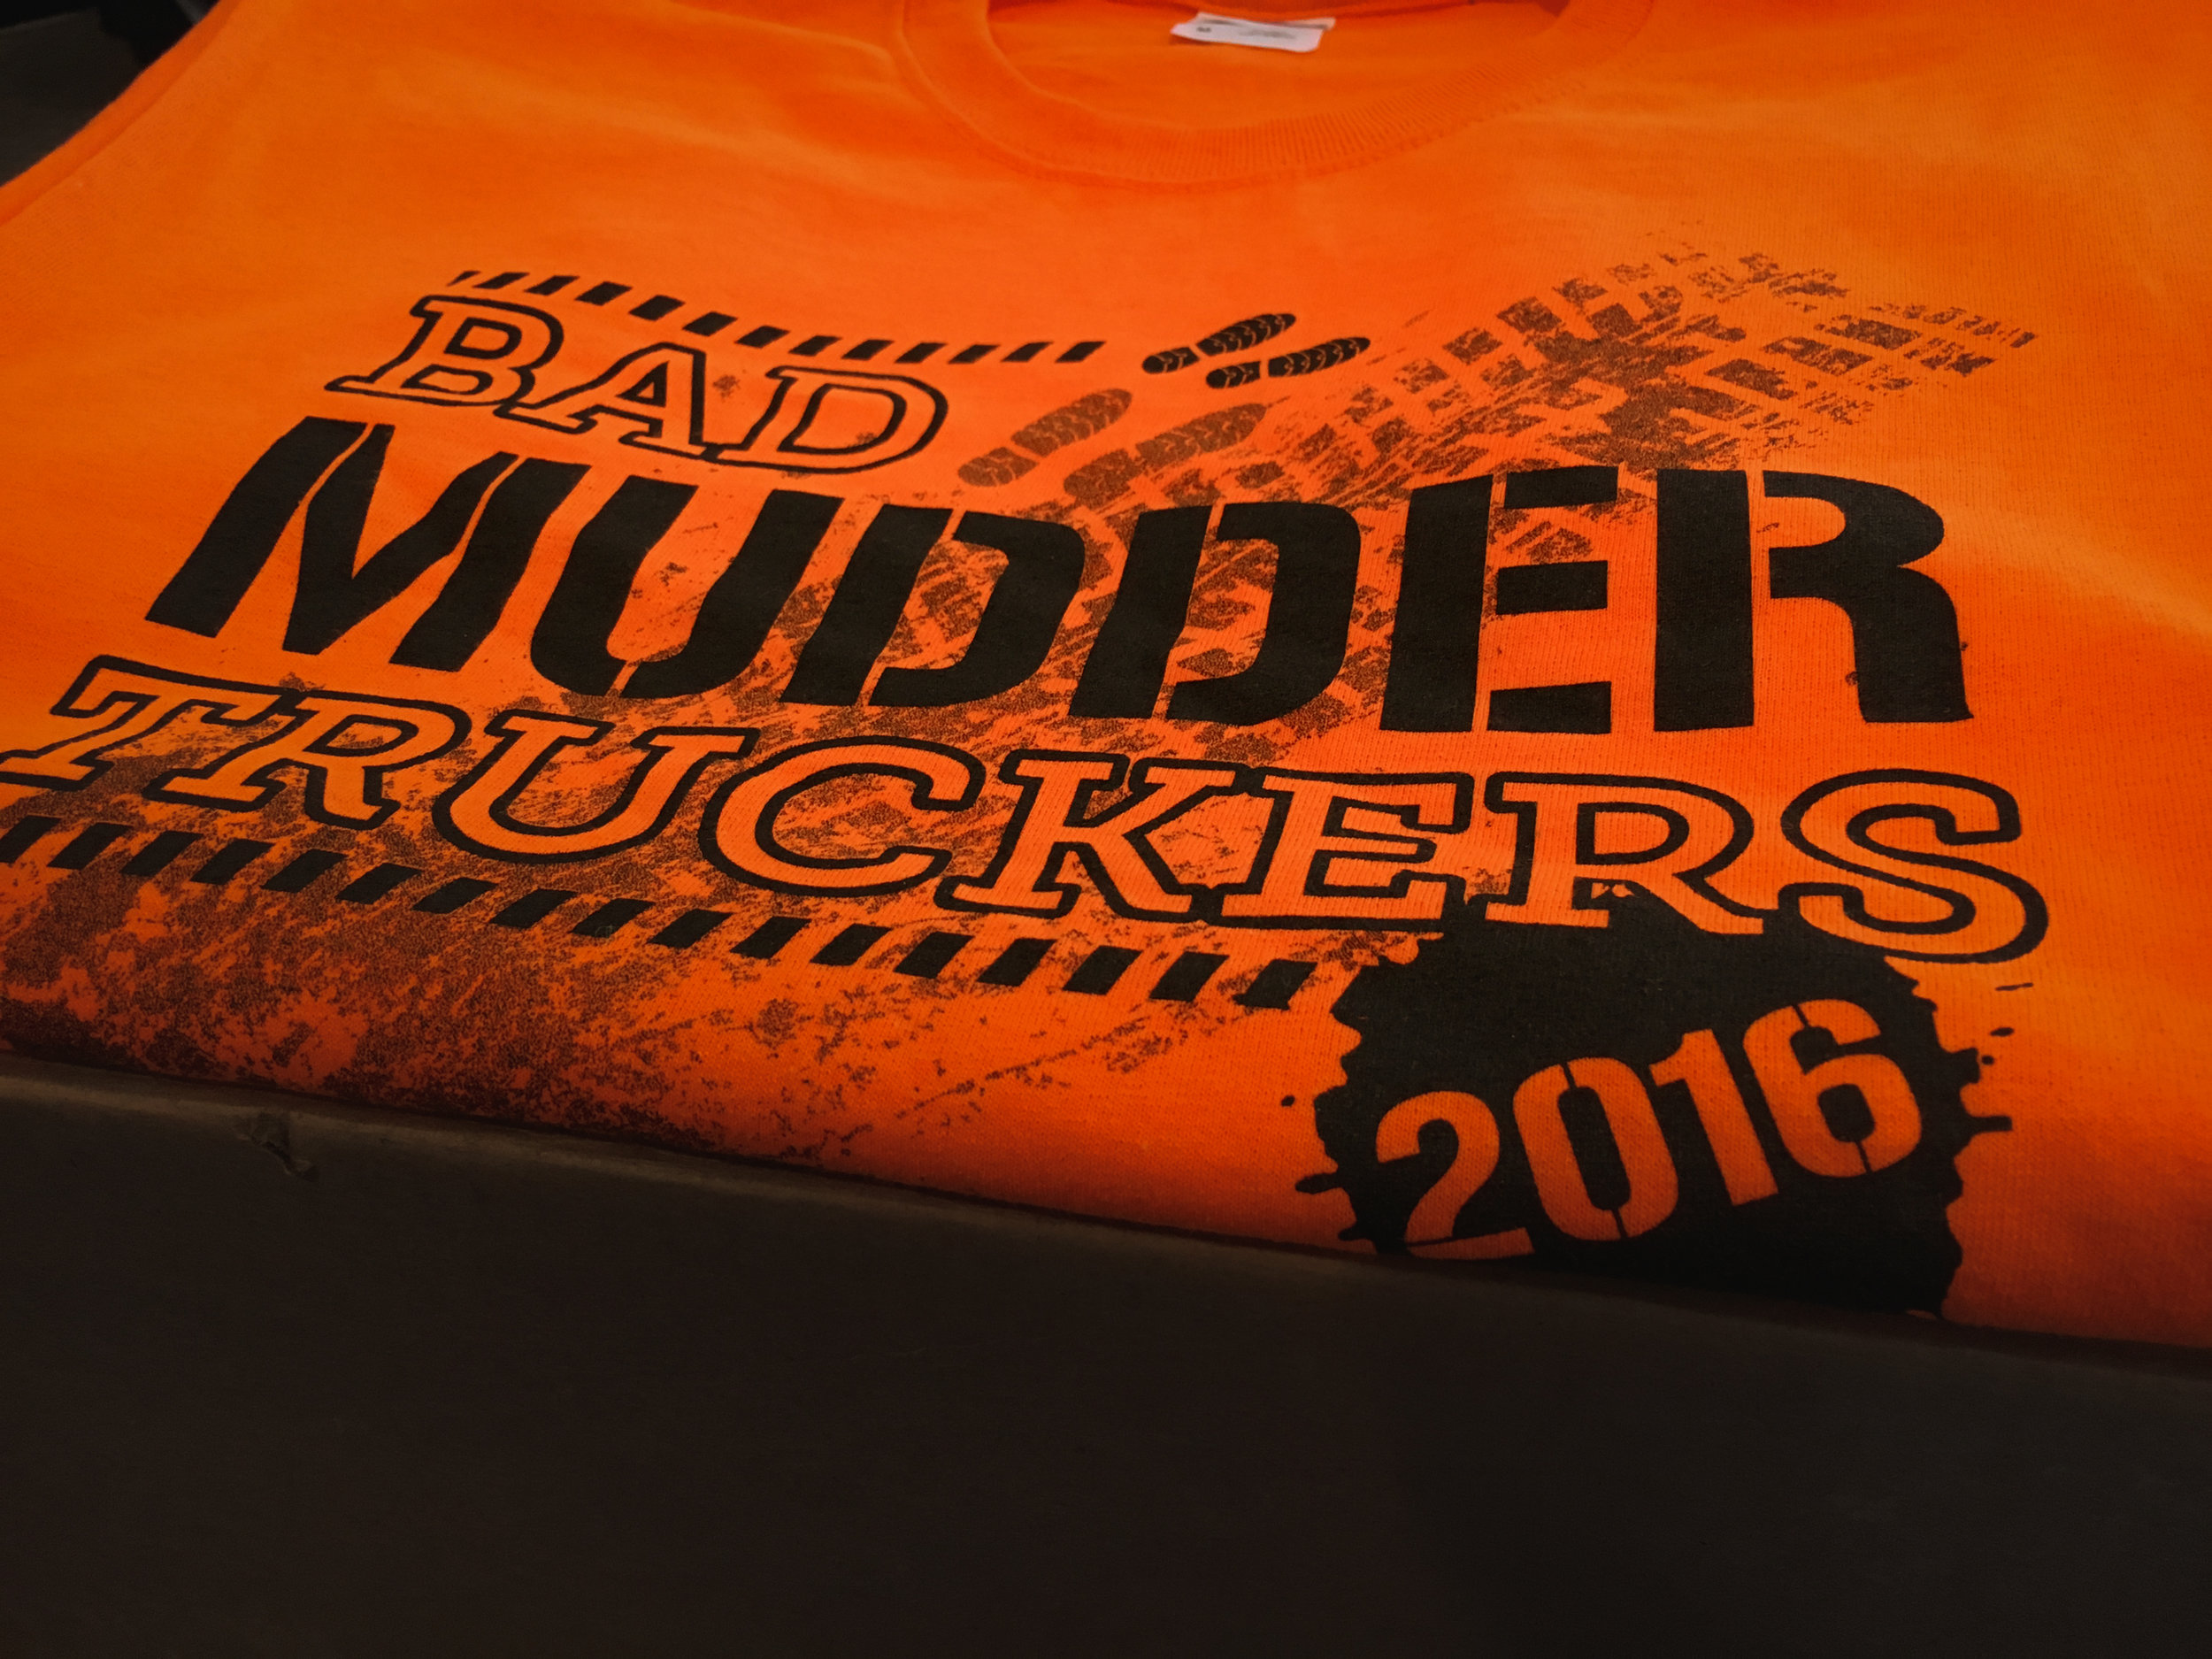 bad-mudder-truckers-orange-tee-edit.jpg